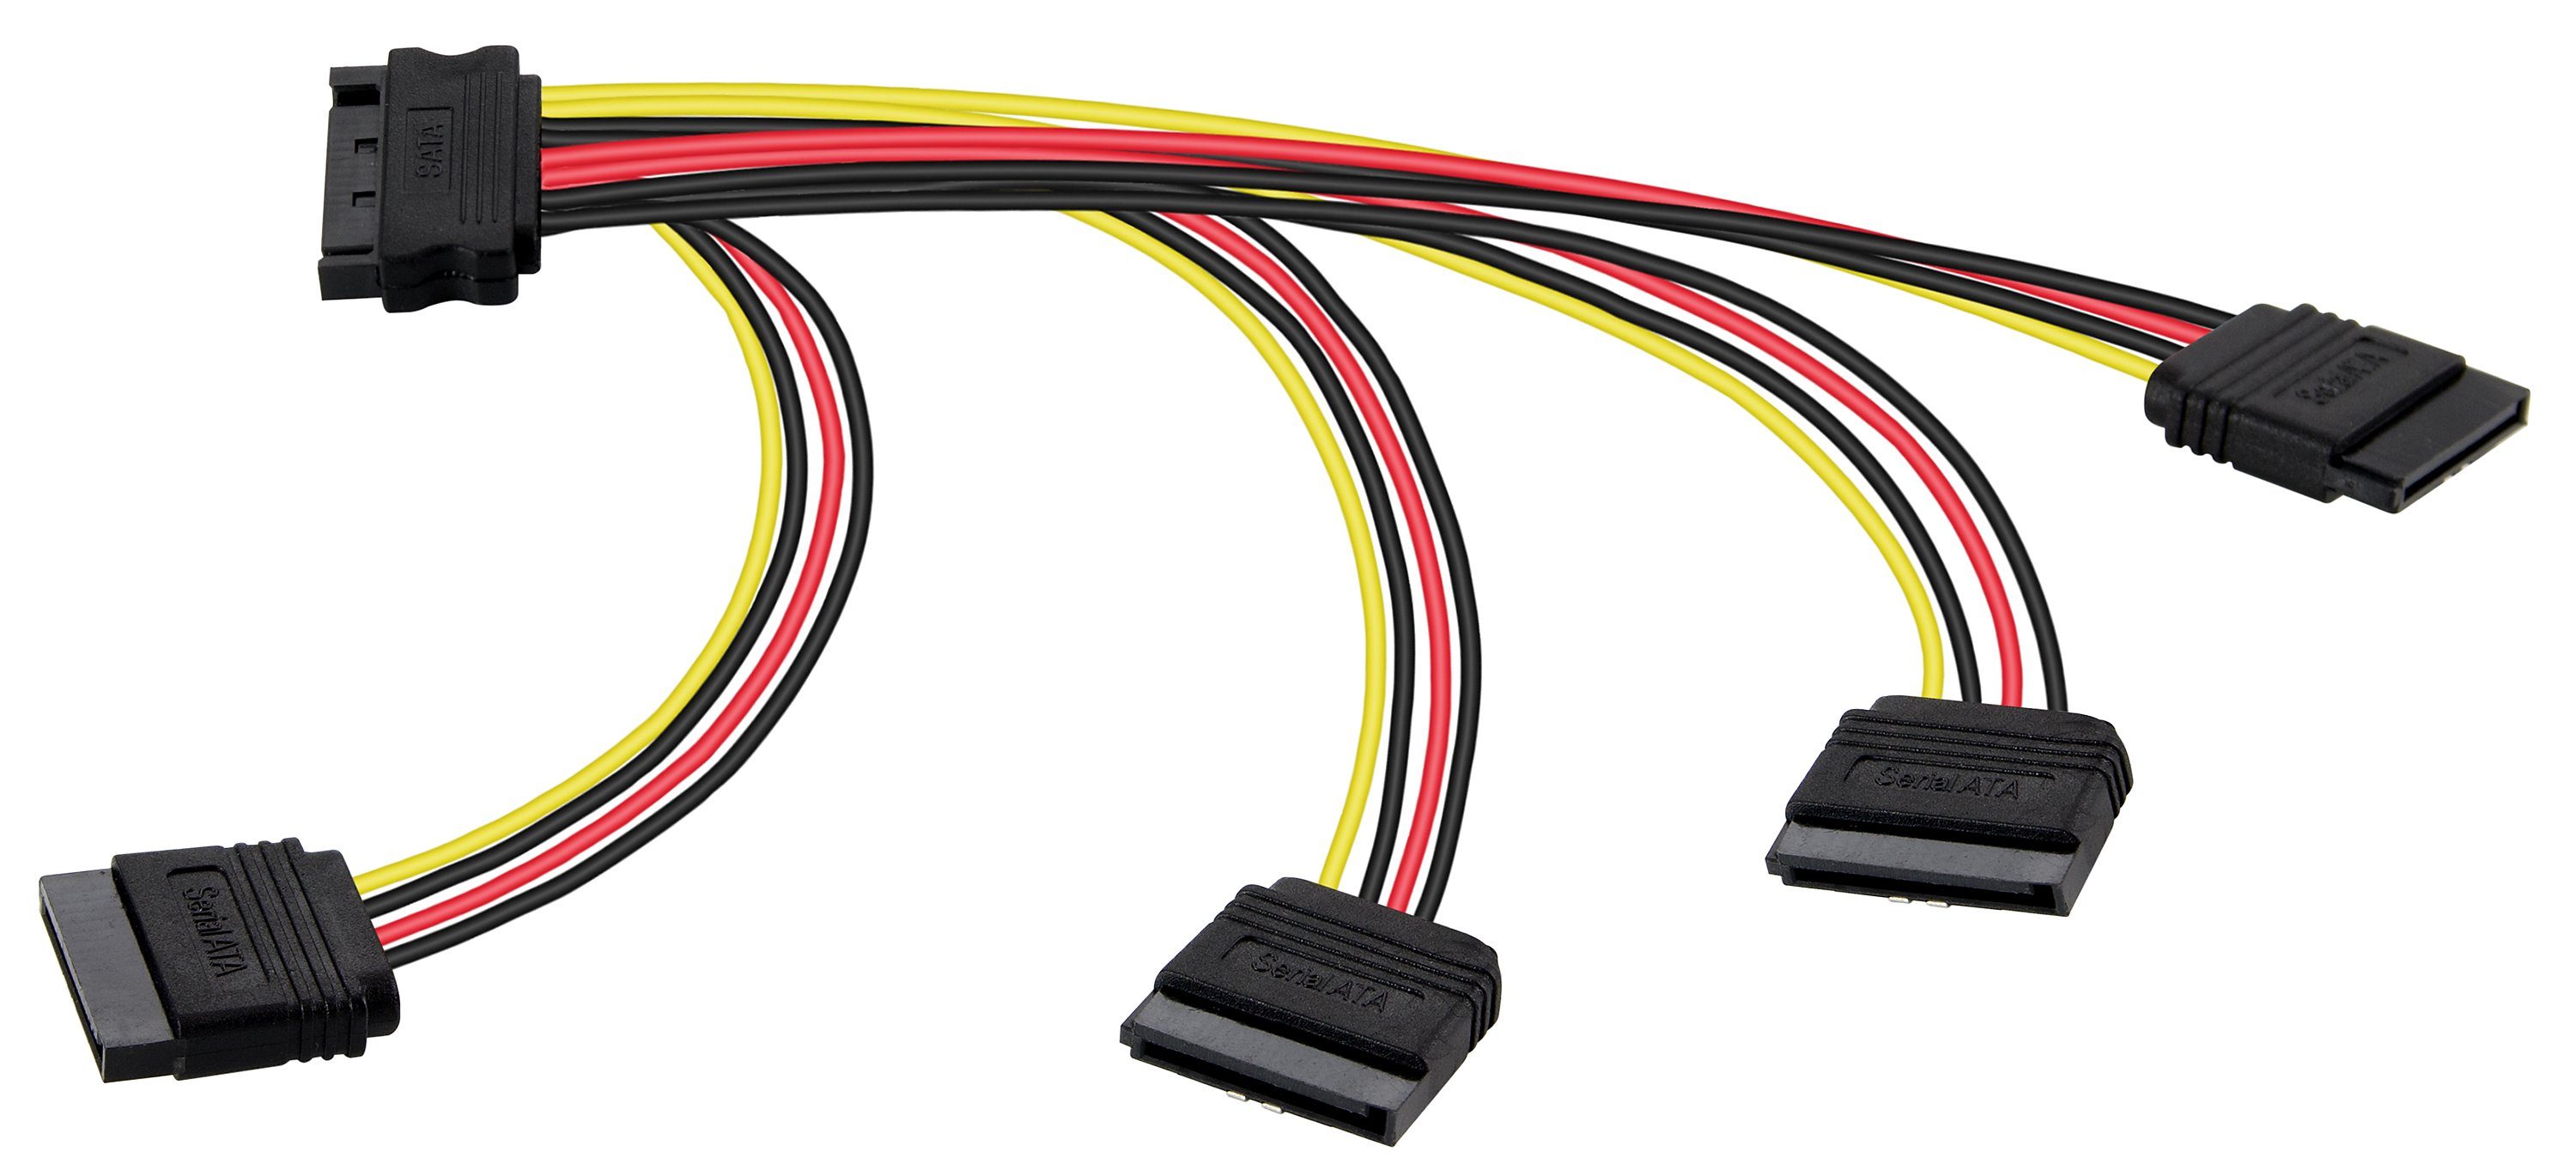 Poppstar SATA Stromkabel Verteiler 4-fach für HDD, SSD, Festplatte, Motherboard Stromkabel, Kabel Stromadapter 20cm 1x Stecker (m) auf 4x Buchse (w) Splitter gerade/gerade (20cm)